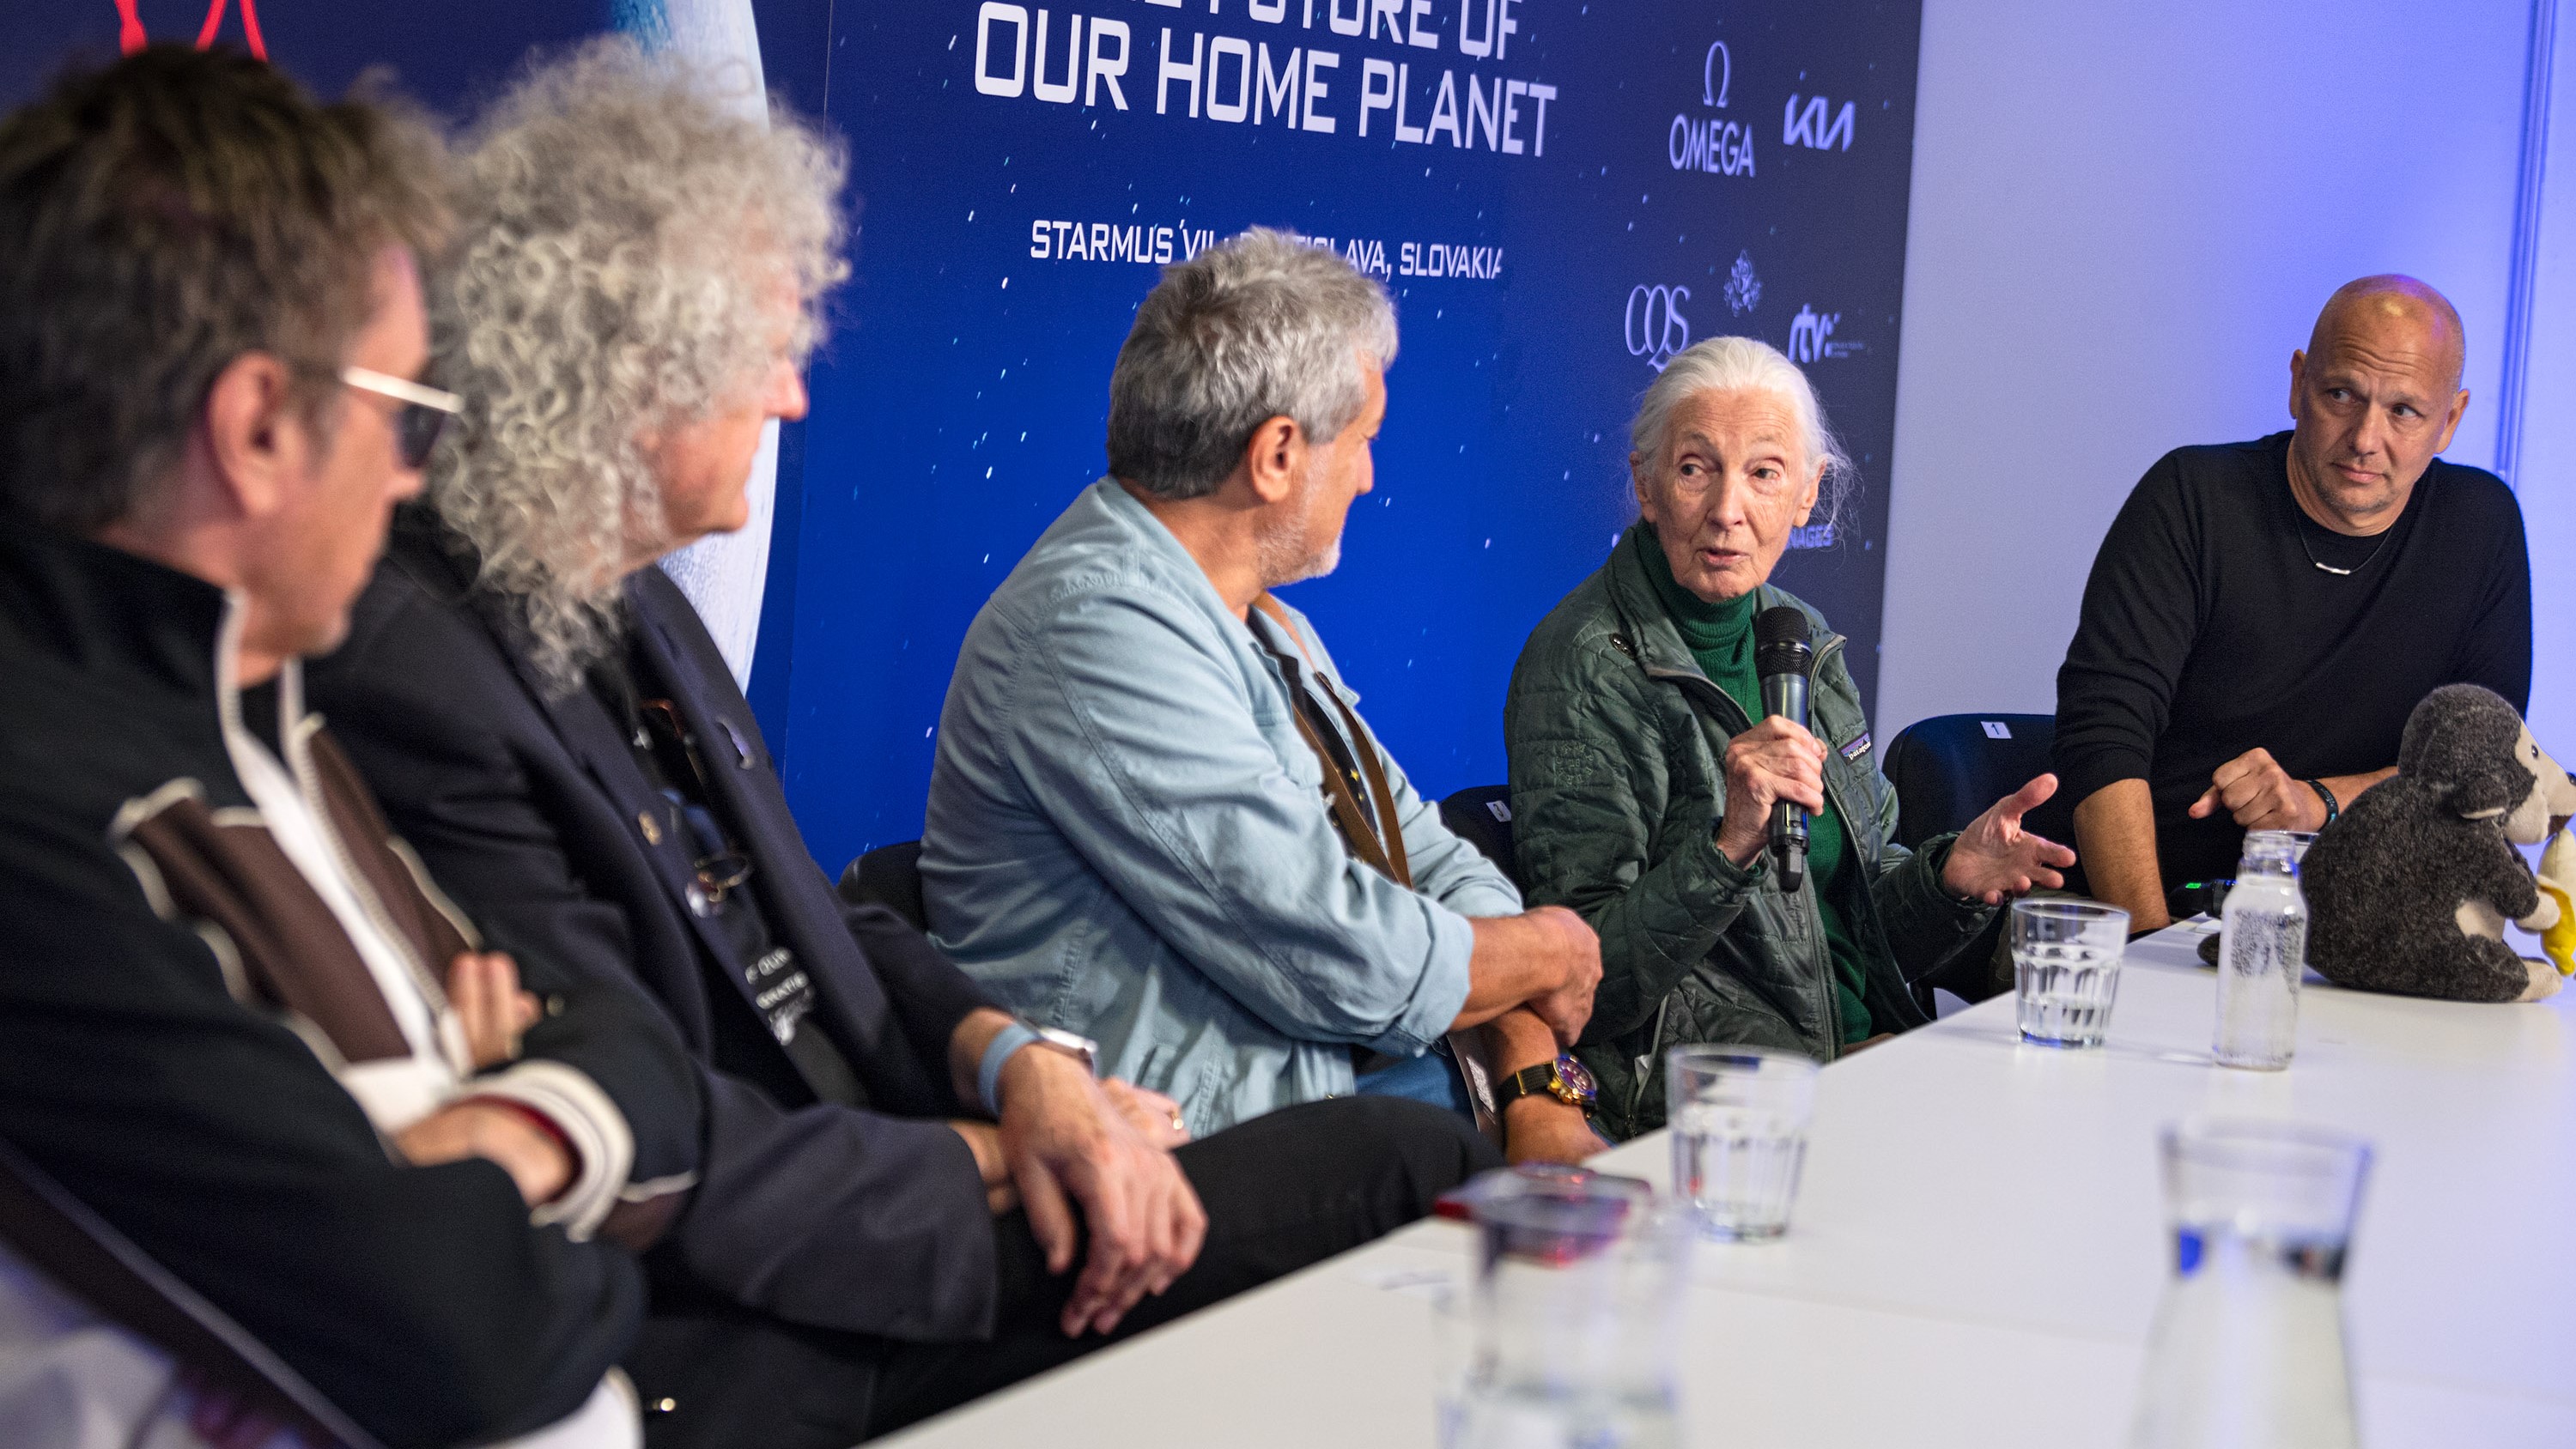 کنفرانس مطبوعاتی افتتاحیه جشنواره استارموس پنج نفر را نشان می دهد که دور یک میز نشسته اند و همه به جین گودال نگاه می کنند که میکروفون در دست دارد.